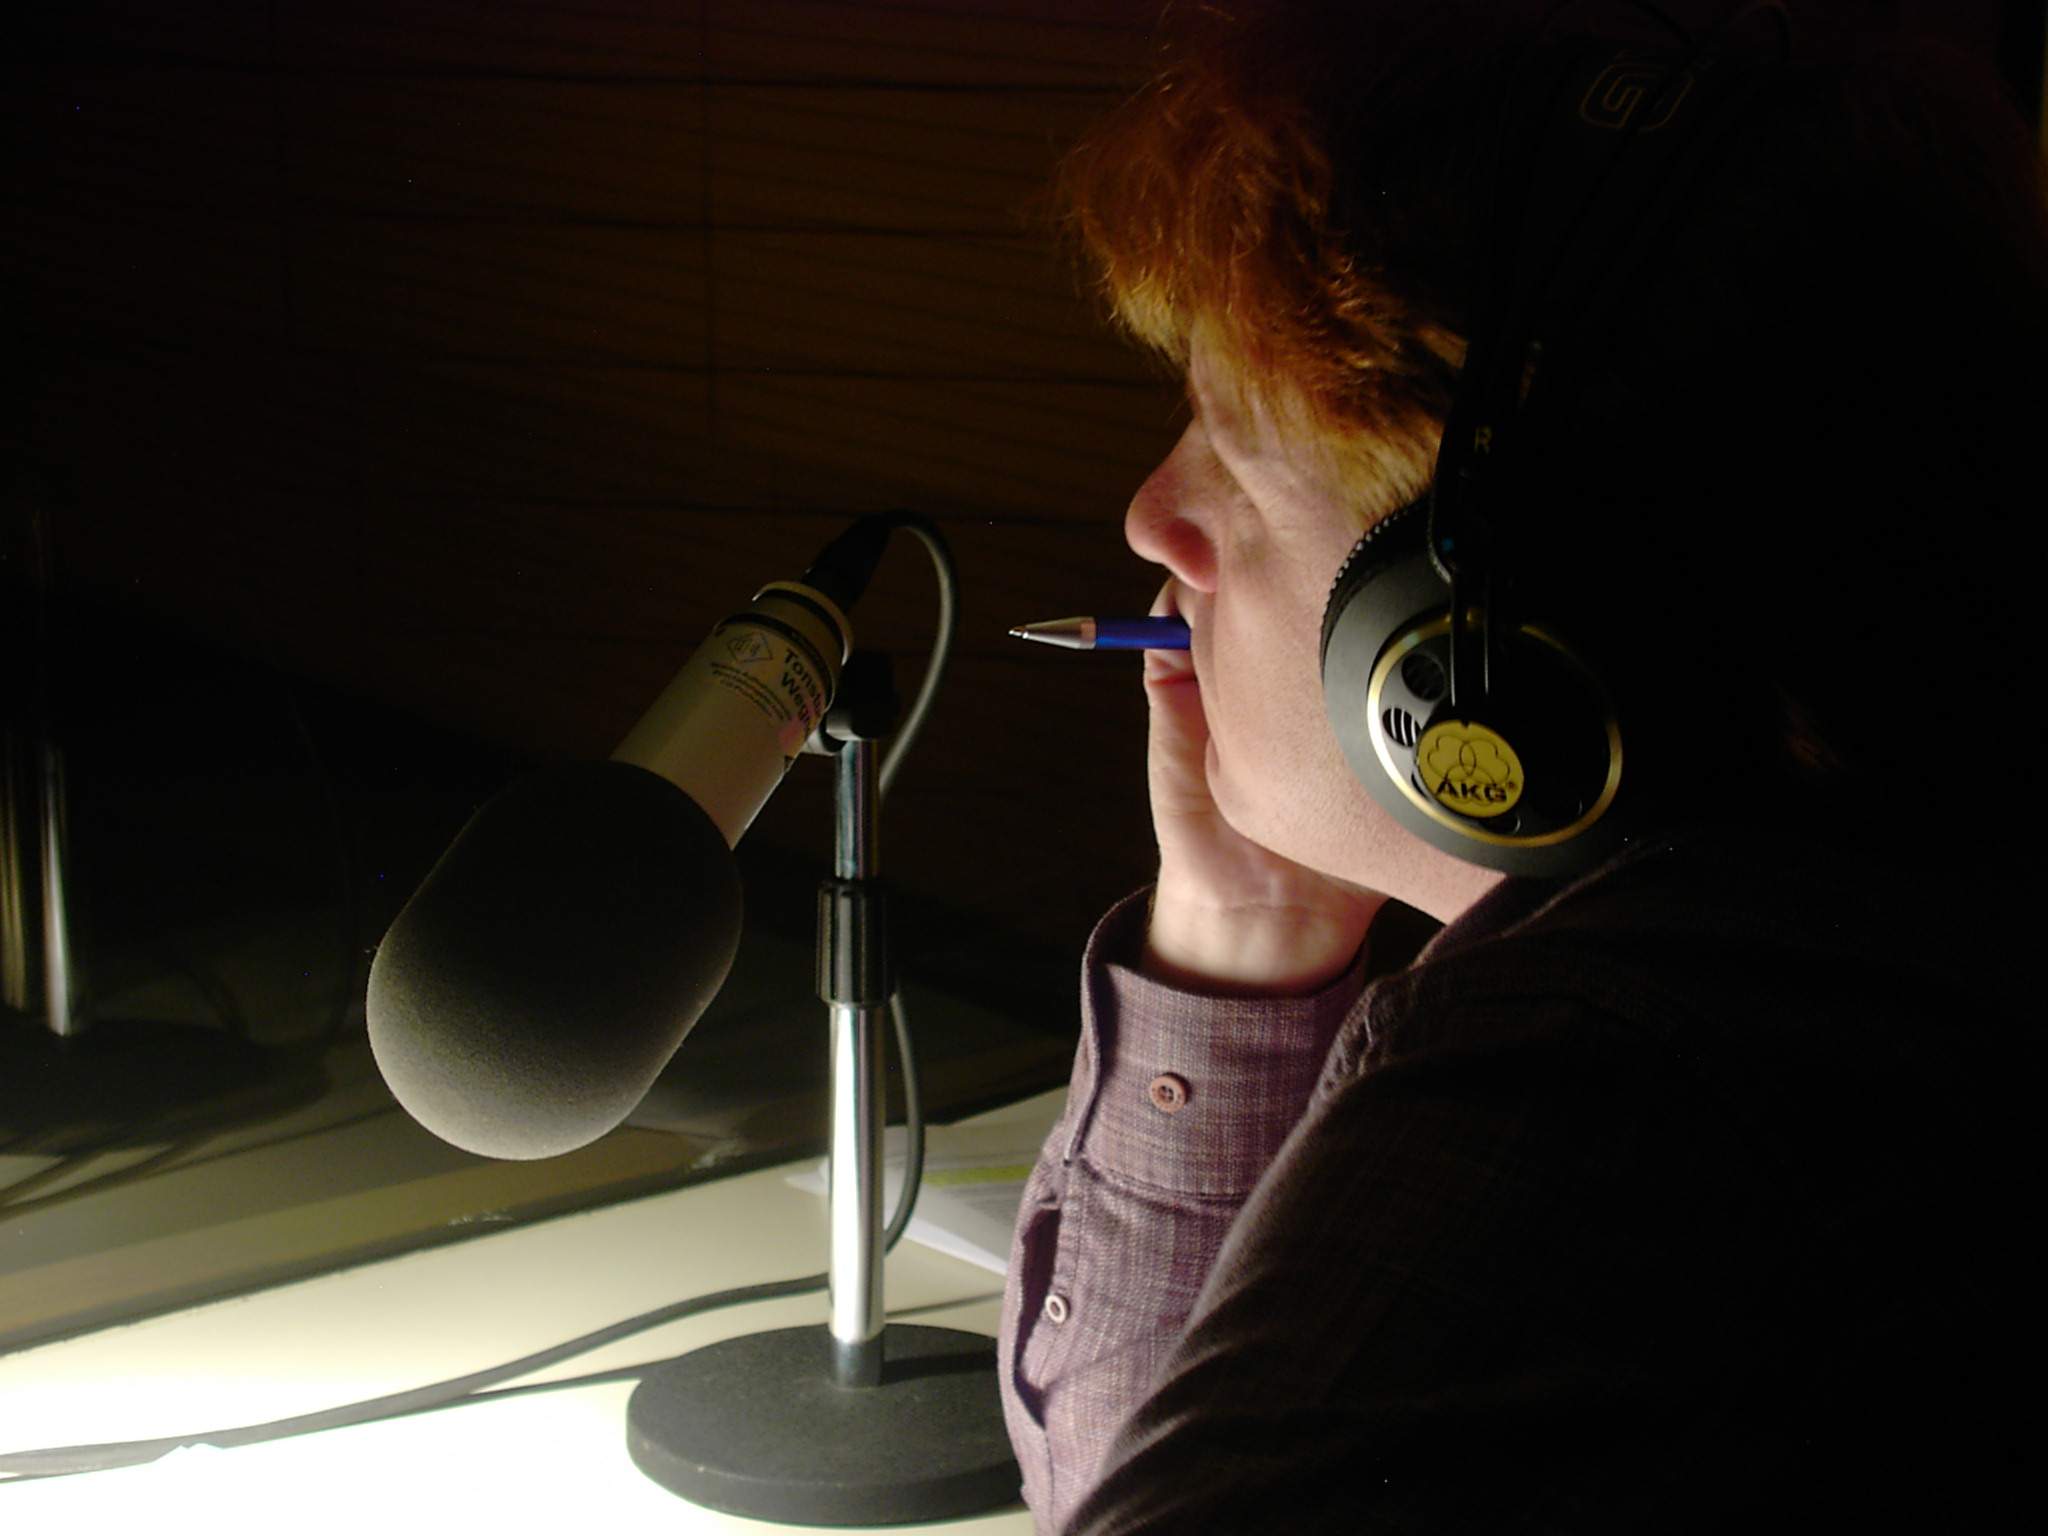 Kommentator während Live-Übertragung Basler Fasnacht (Wegner & Sigma Radioproduktionen)